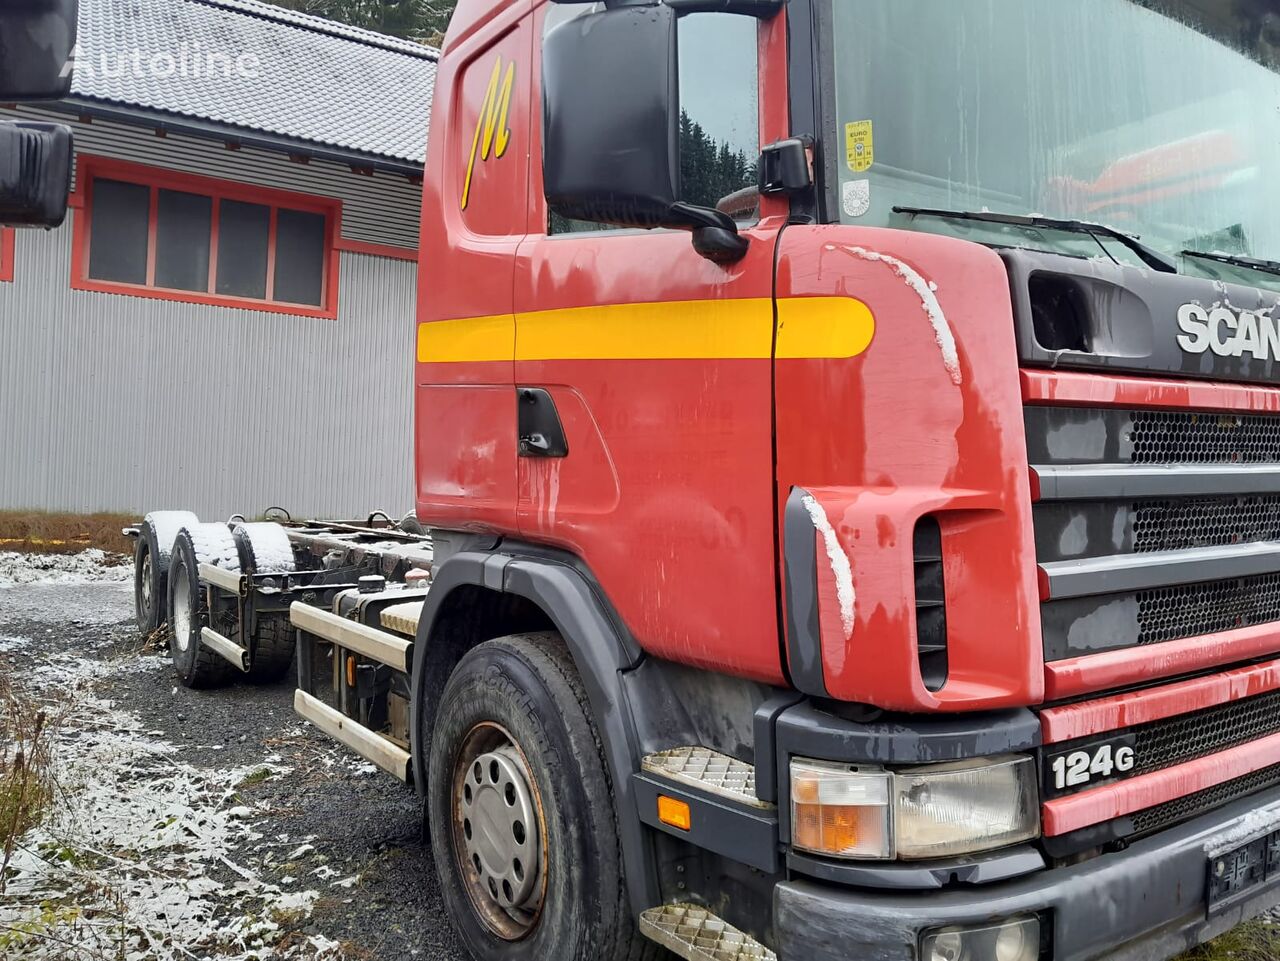 Scania 124G hook lift truck